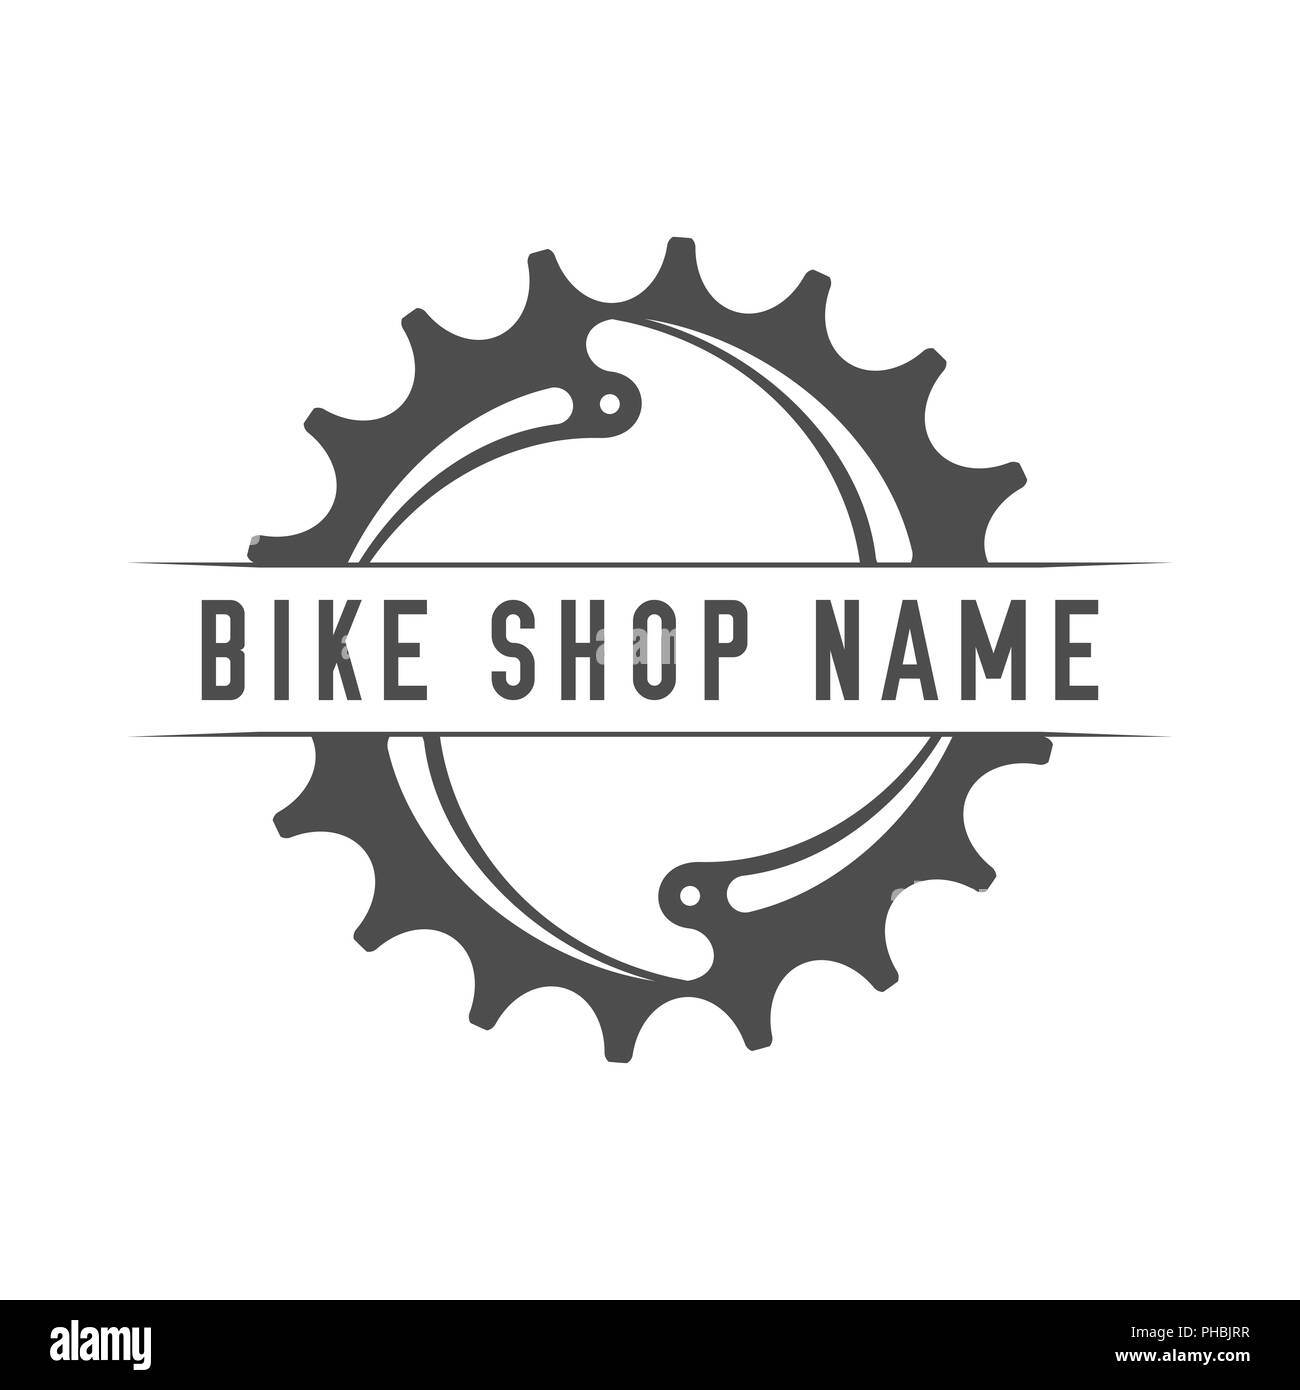 Bikes Shop Emblem. Design Element for Bike Shop or Advertising Banner ...